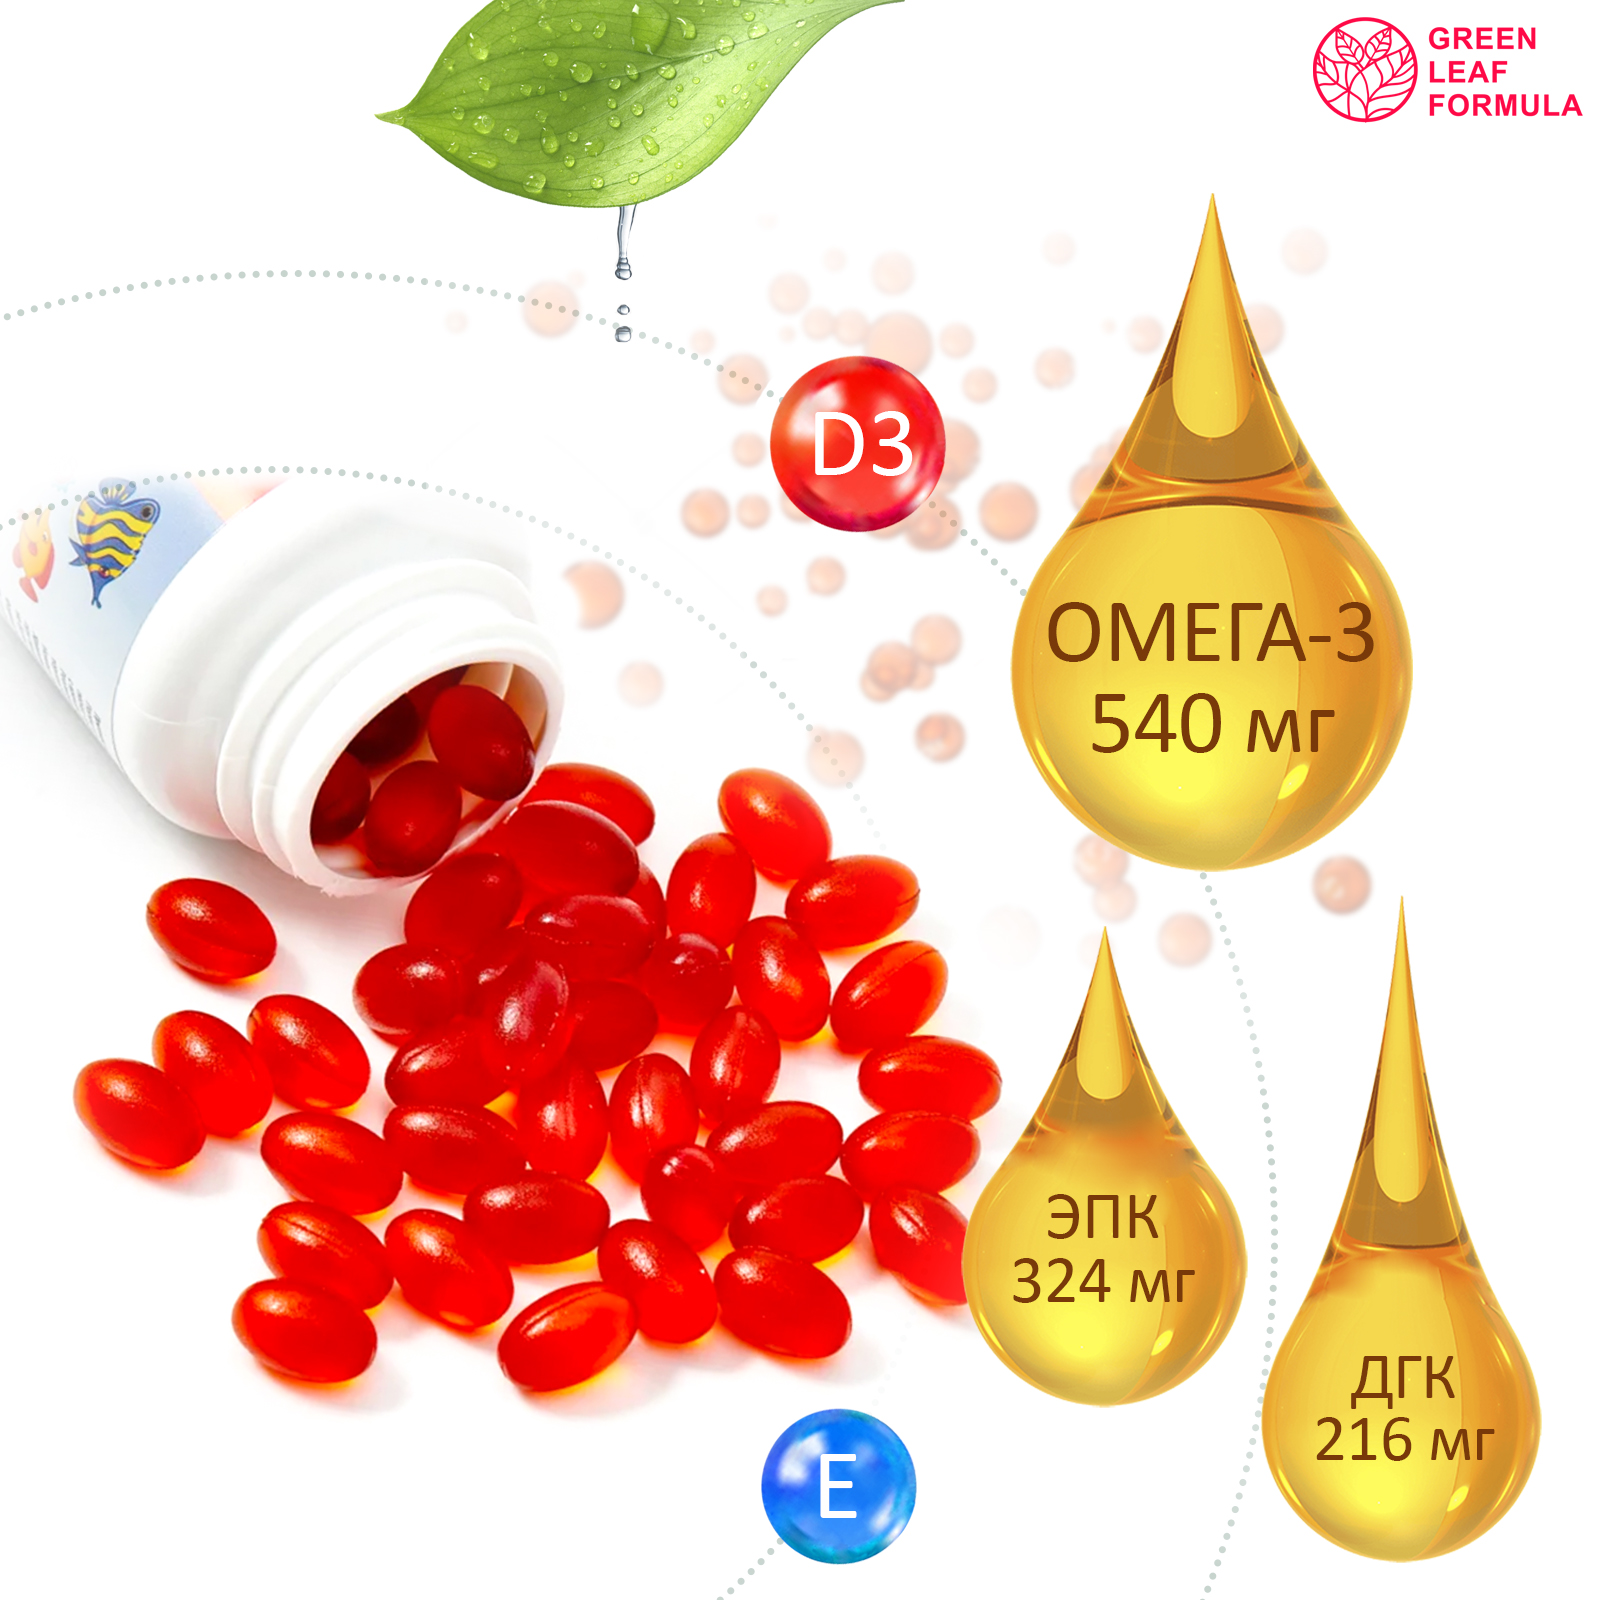 Детская омега 3 и метабиотики Green Leaf Formula для кишечника витаминный комплекс для иммунитета 120 шт - фото 4